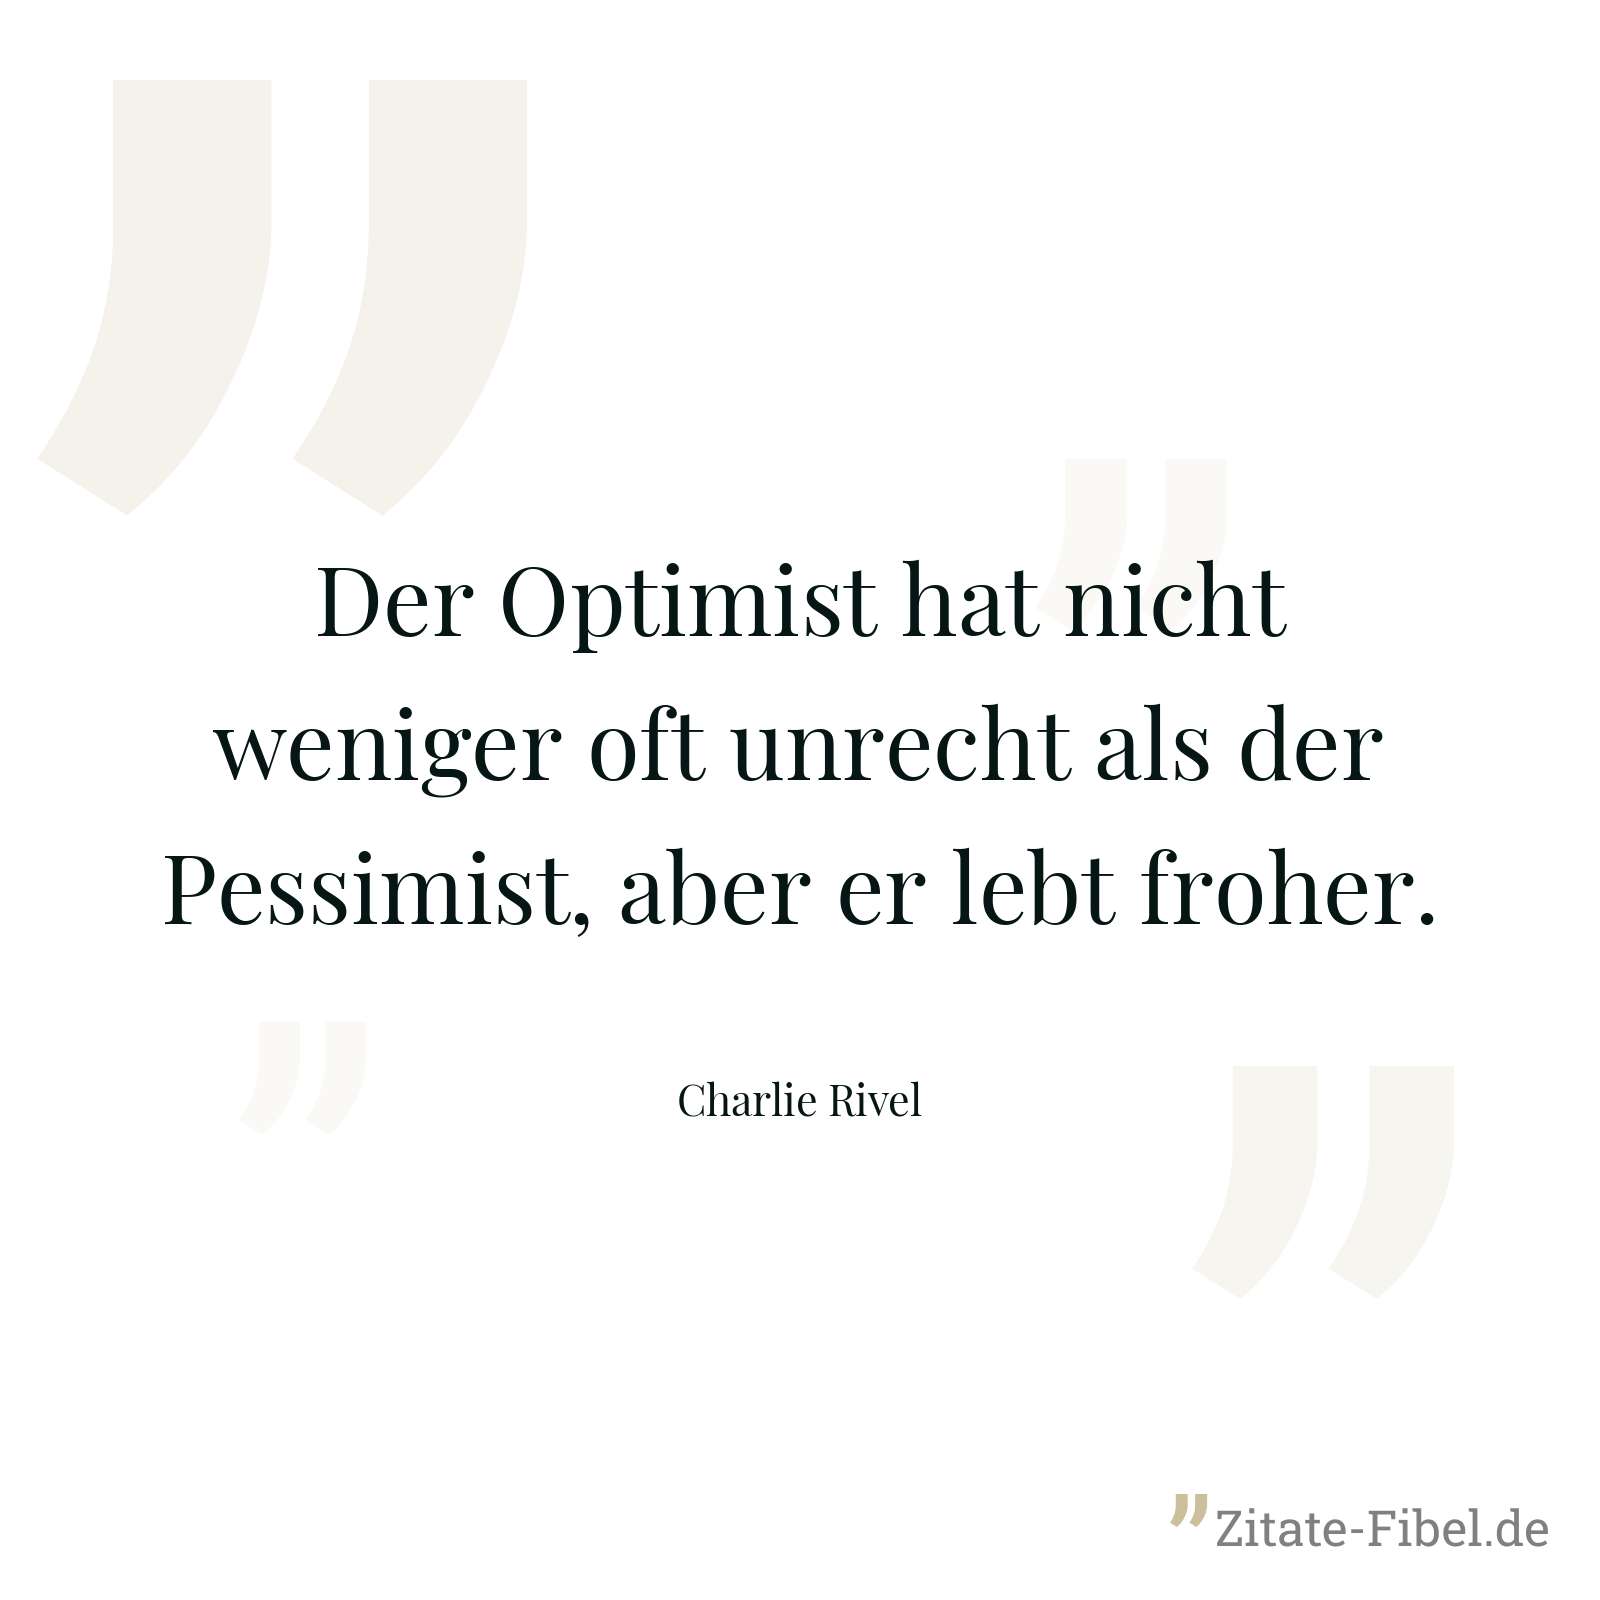 Der Optimist hat nicht weniger oft unrecht als der Pessimist, aber er lebt froher. - Charlie Rivel